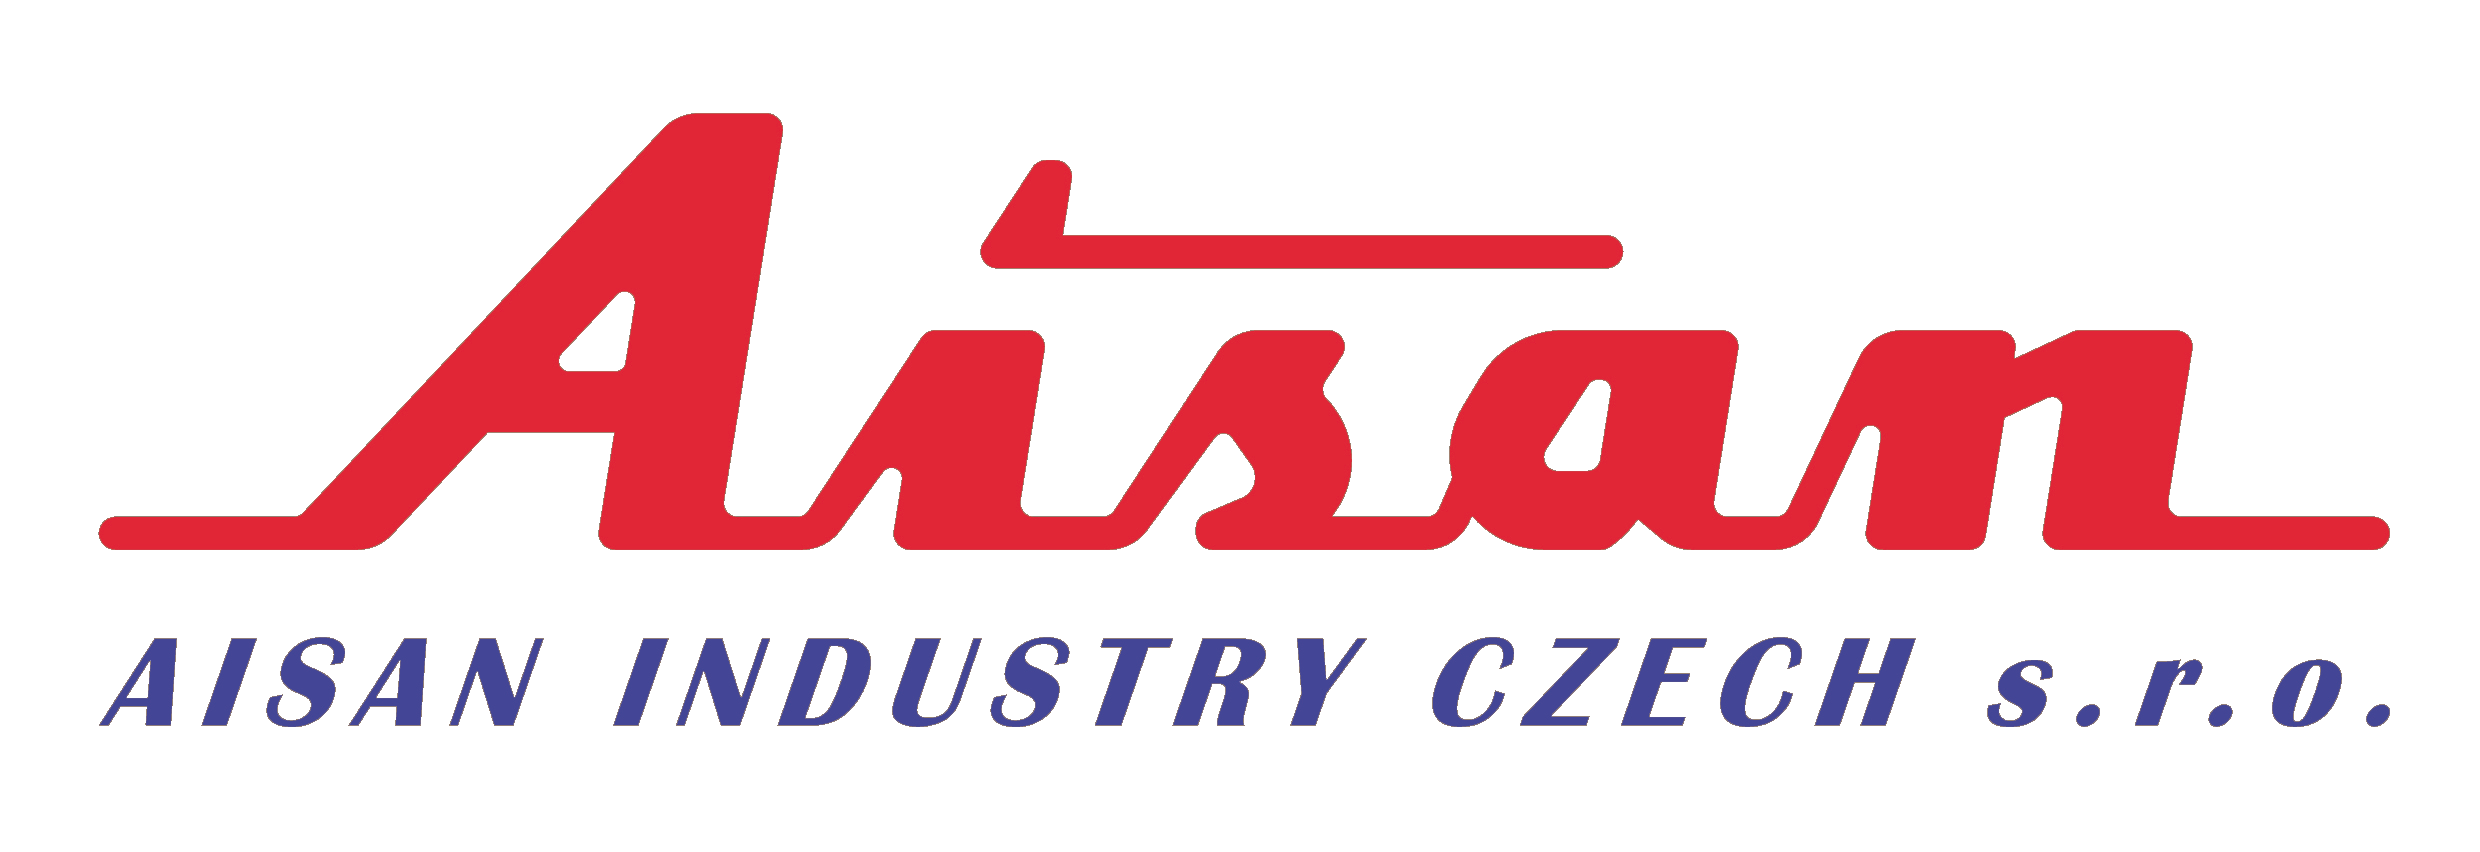 Aisan Industry Czech s.r.o.